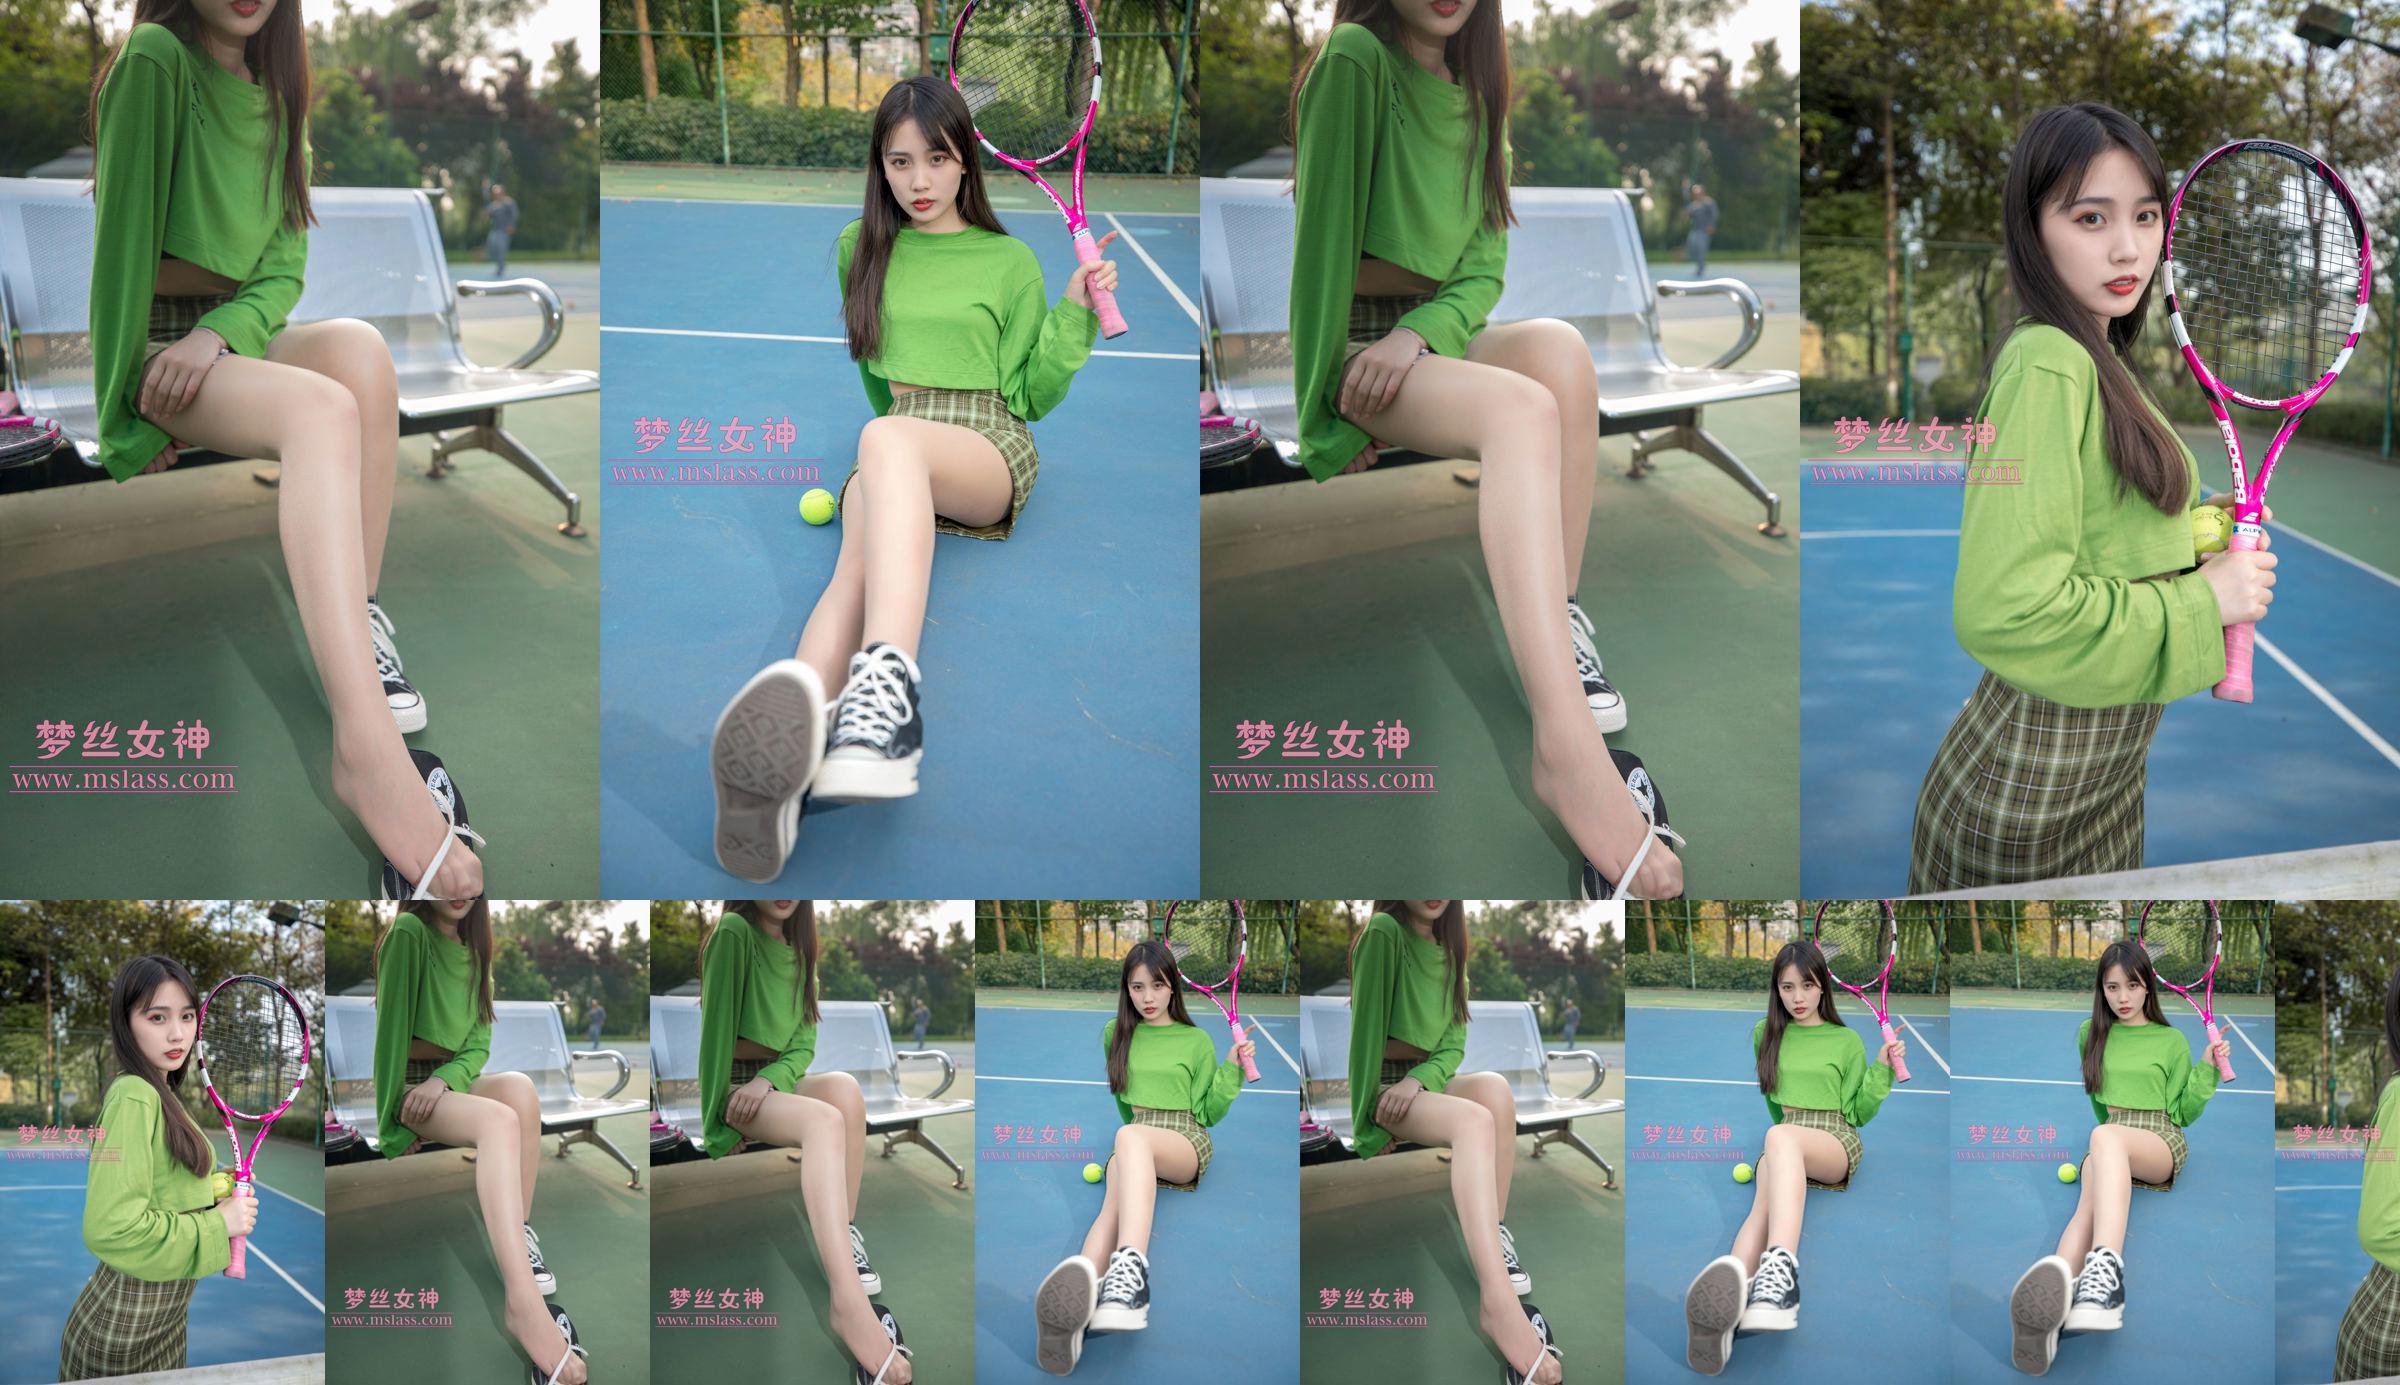 [Deusa dos Sonhos MSLASS] Xiang Xuan Tennis Girl No.83a3bc Página 1